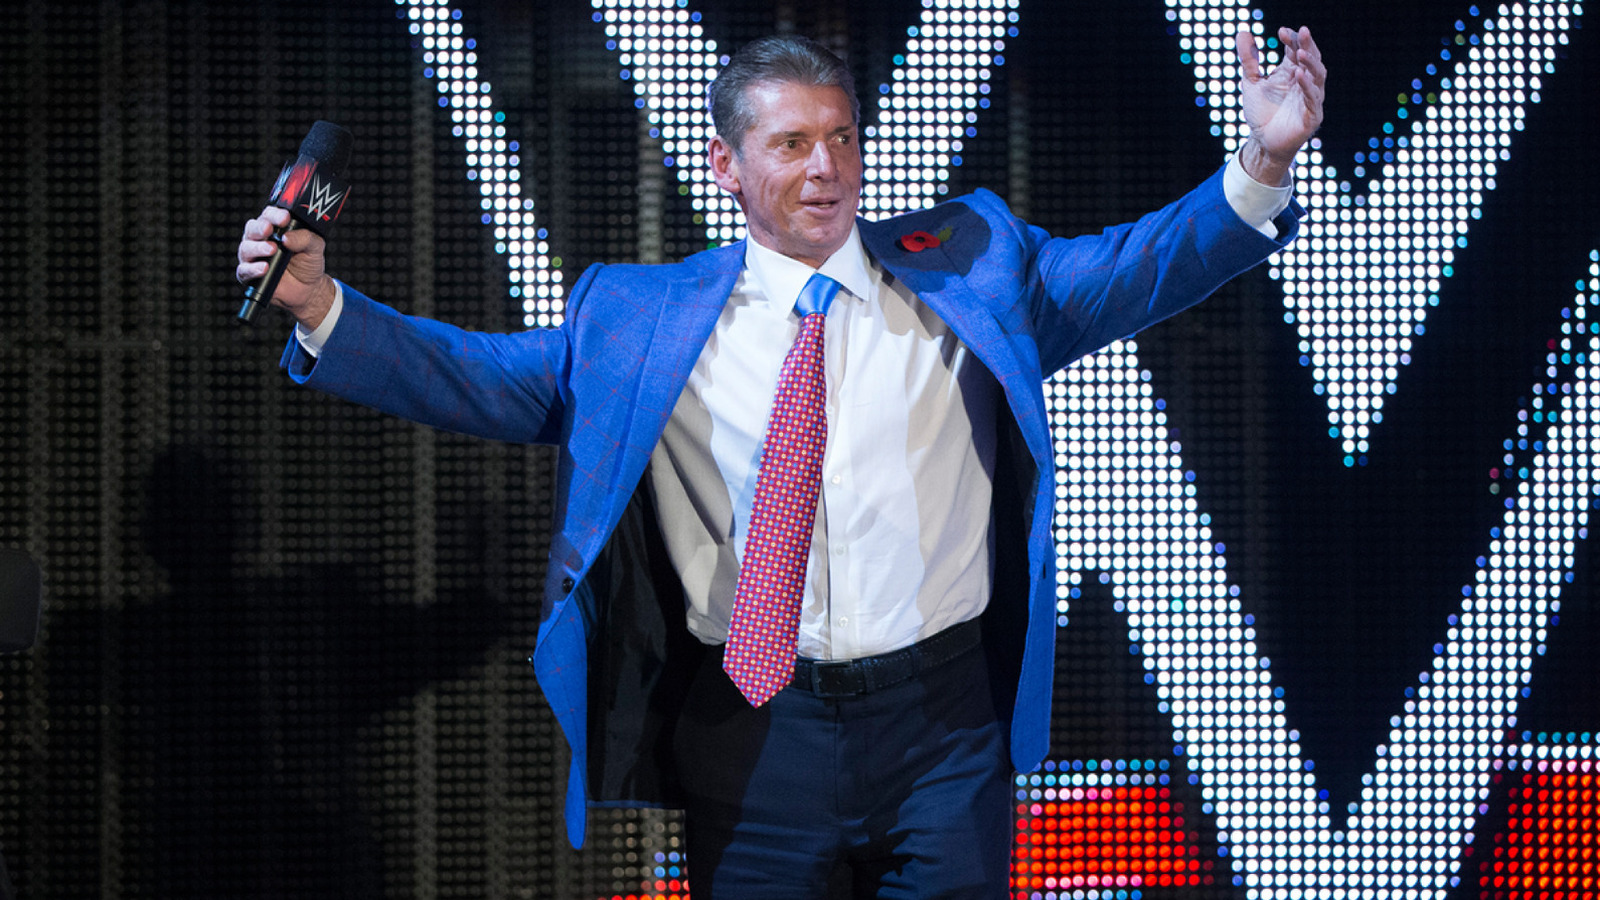 Tony Schiavone recuerda la divertida frase de Vince McMahon de la WWE en Survivor Series anteriores